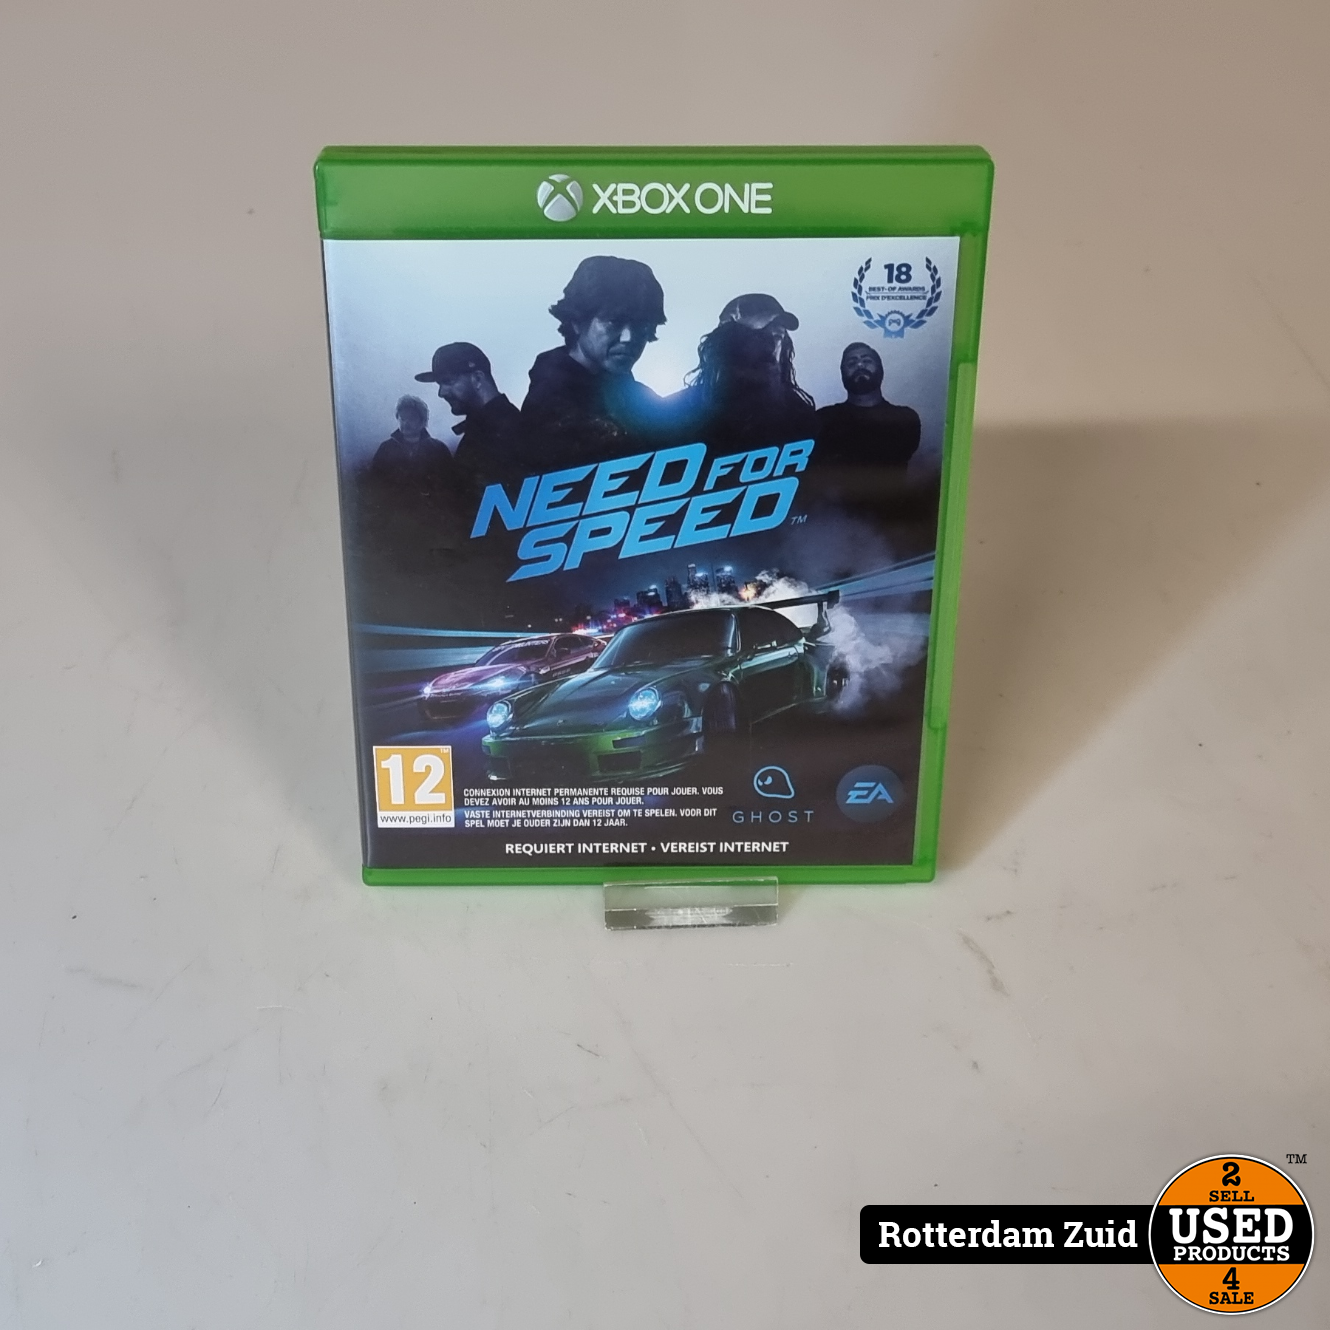 Sluier Ontwijken Communistisch Xbox One Game | Need for Speed - Used Products Rotterdam Zuid